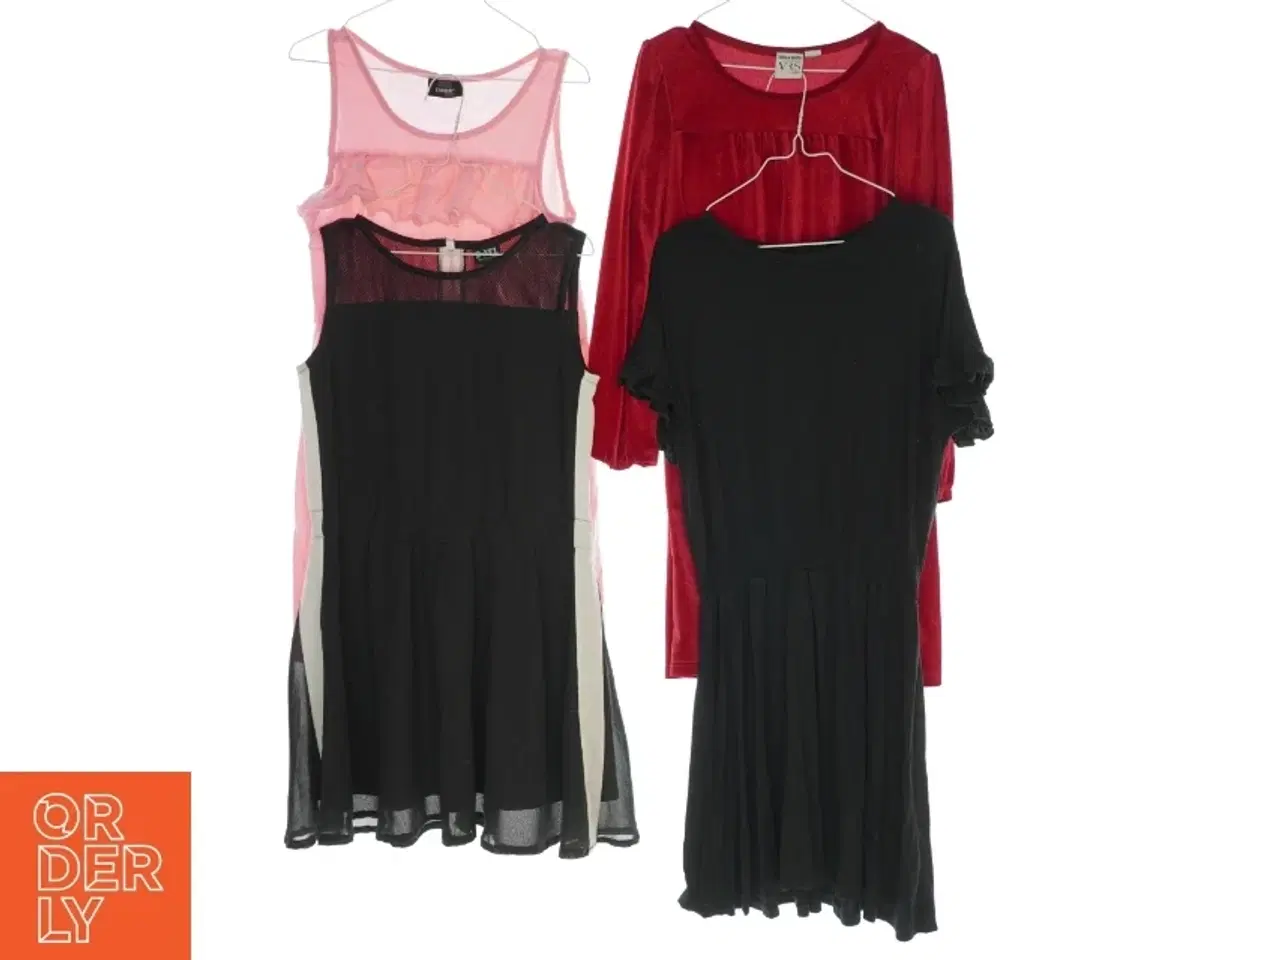 Billede 1 - 4 kjoler fra forskellige mærker